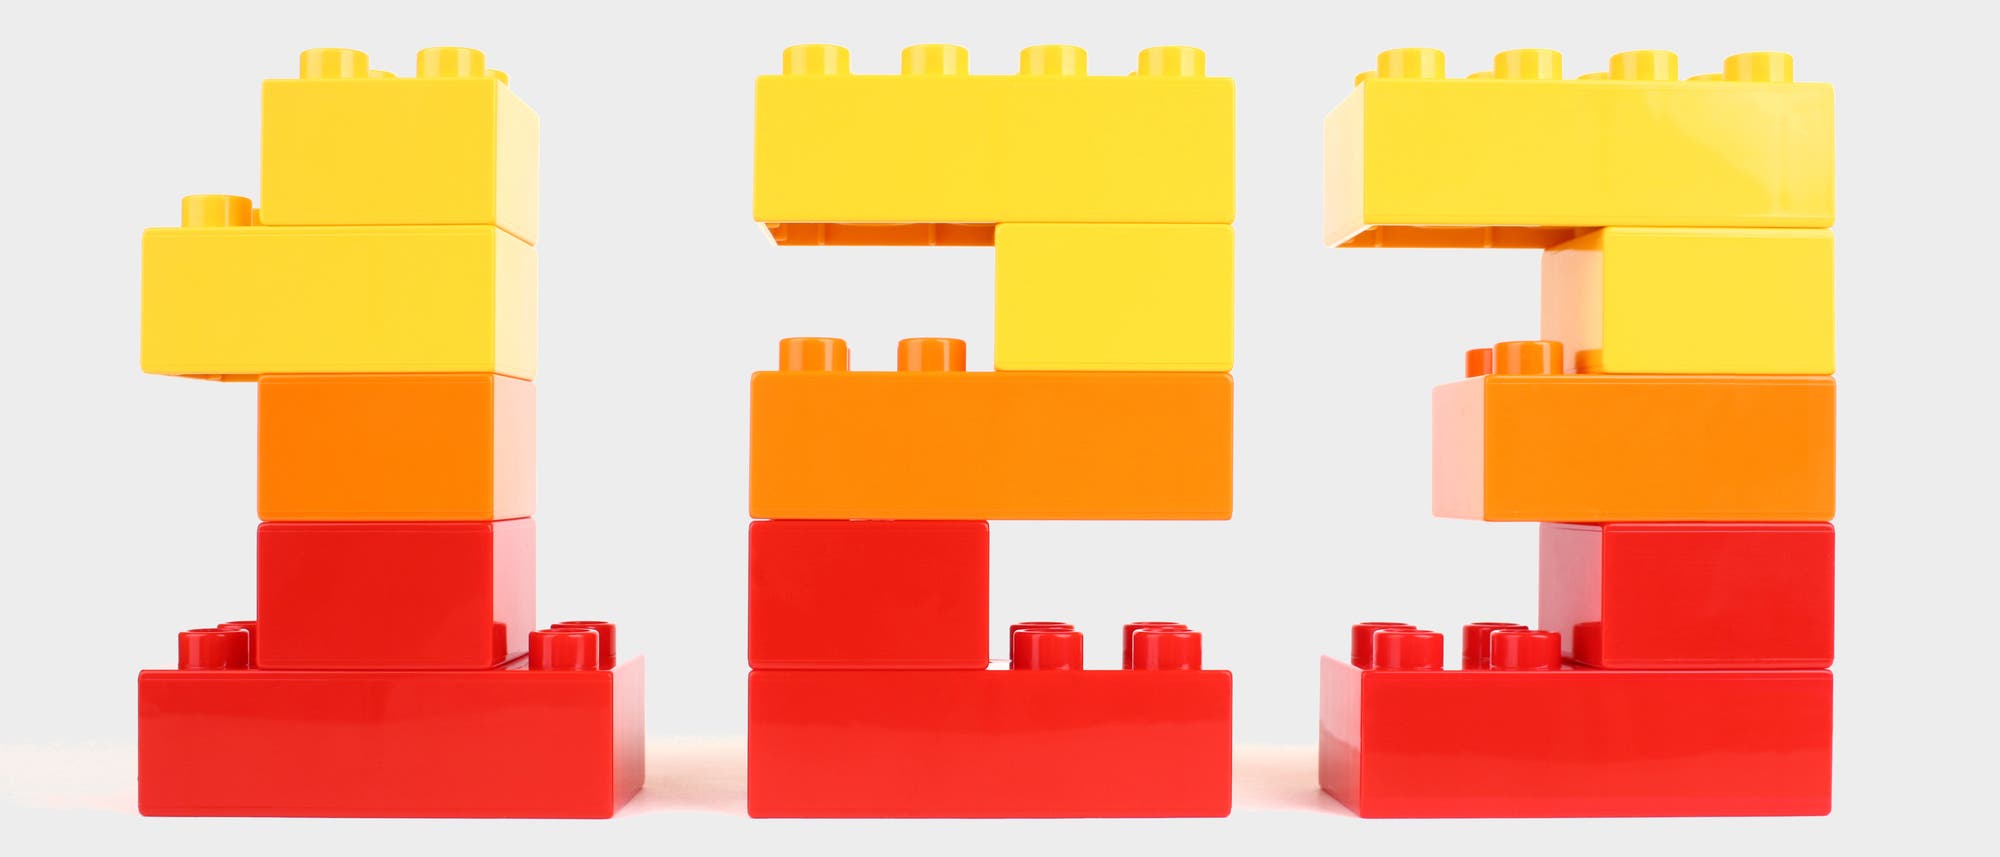 Die Ziffern 1, 2, 3 aus LEGO Steinen